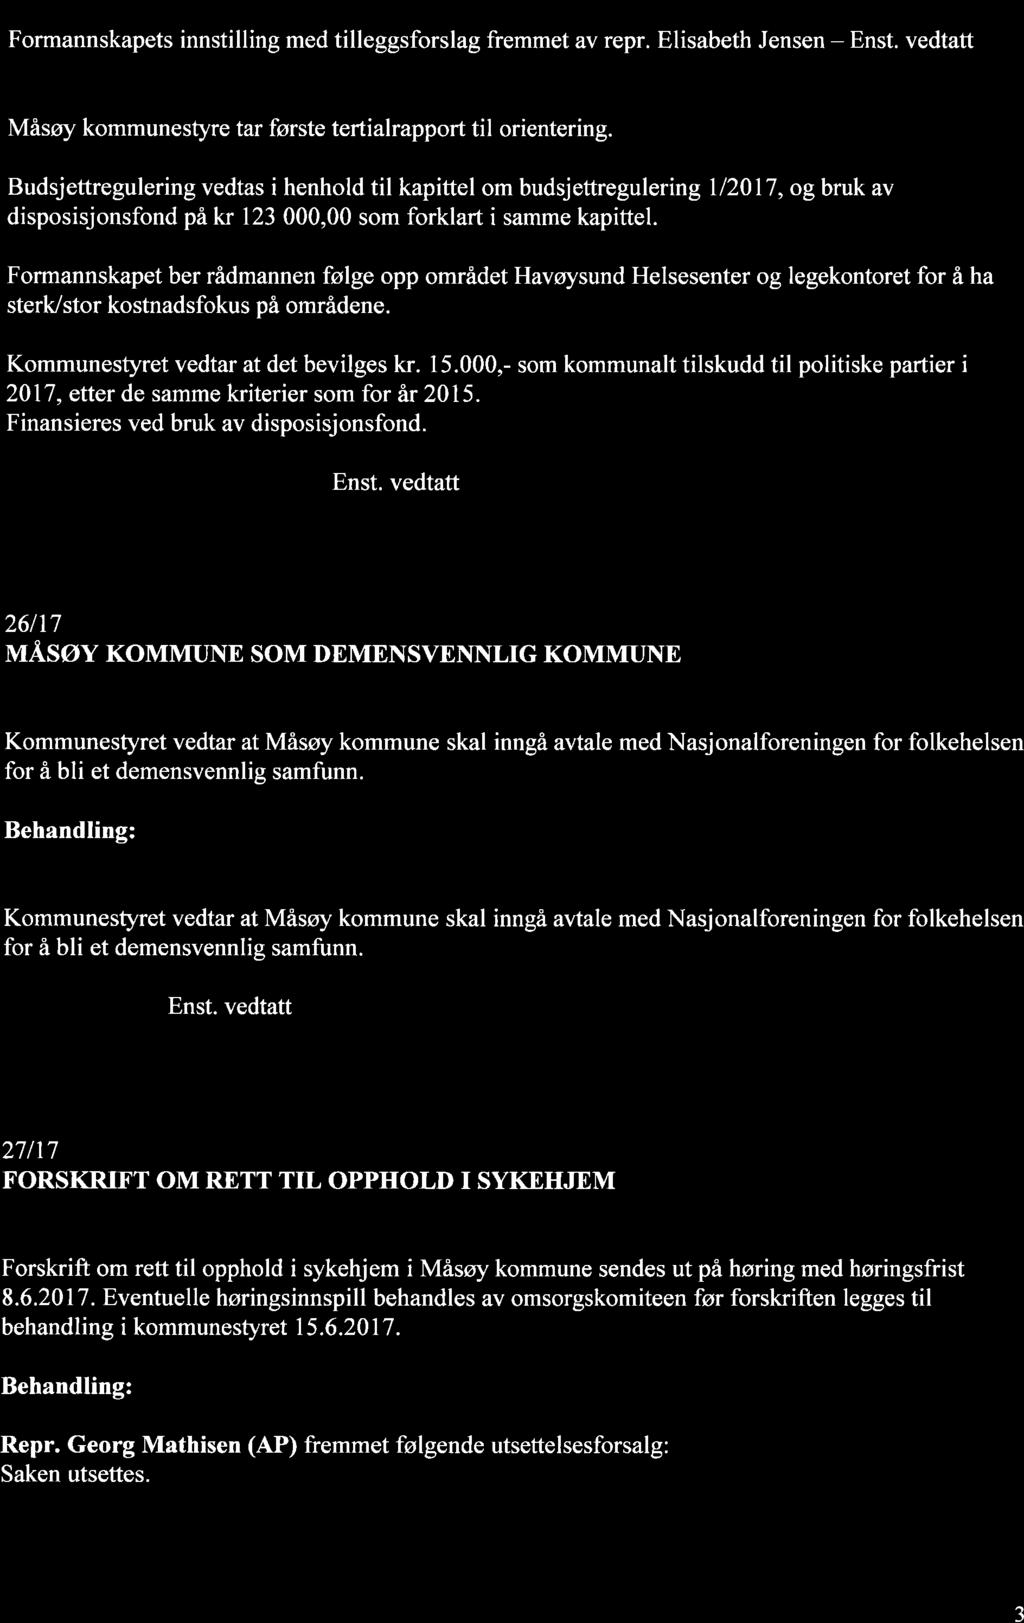 Votering: Formannskapets innstilling med tilleggsforslag fremmet av repr. Elisabeth Jensen - Måsøy kommunestyre tar første tertialrapport til orientering.